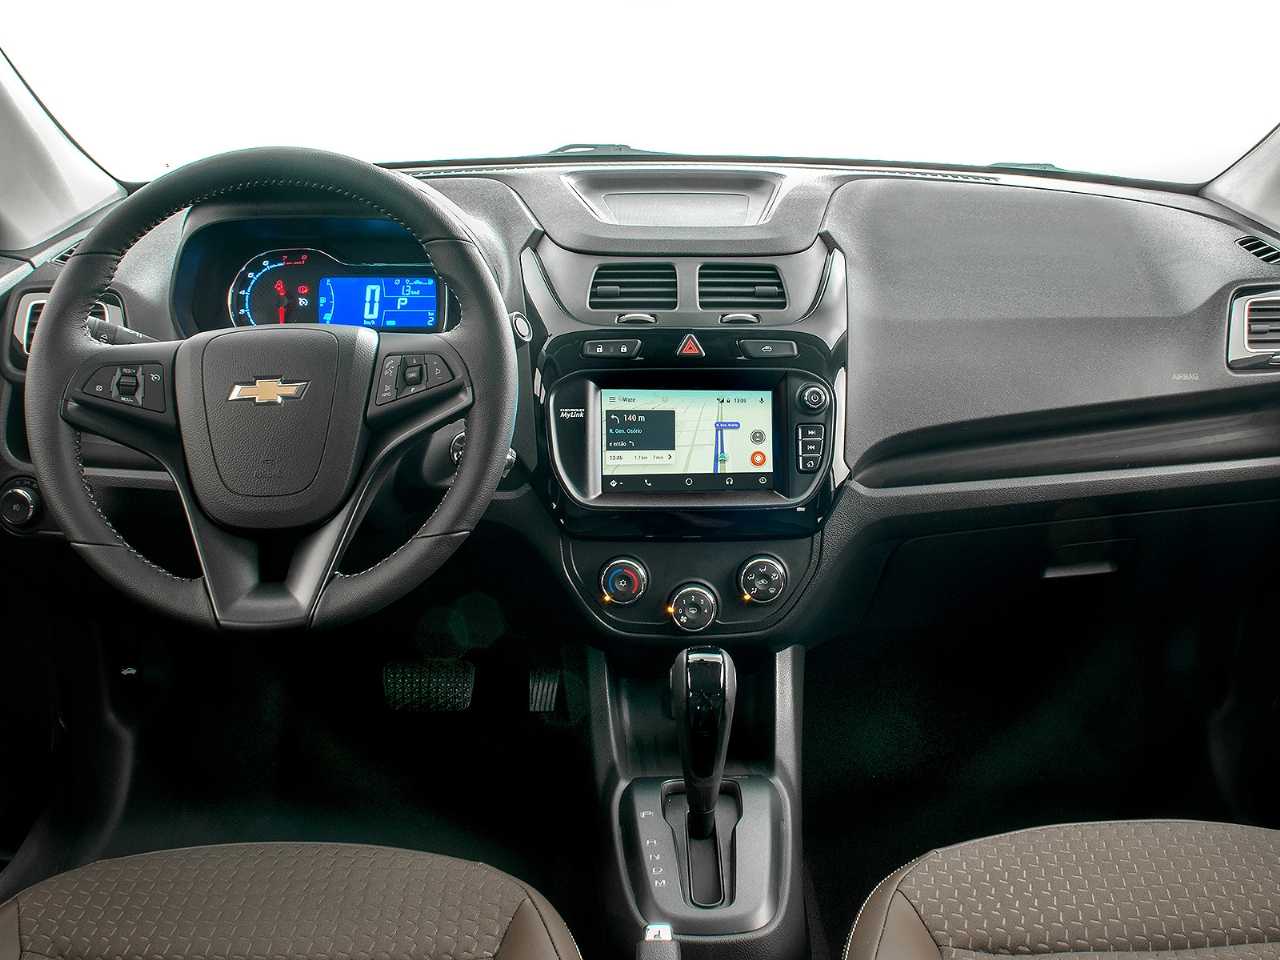 ChevroletCobalt 2020 - painel